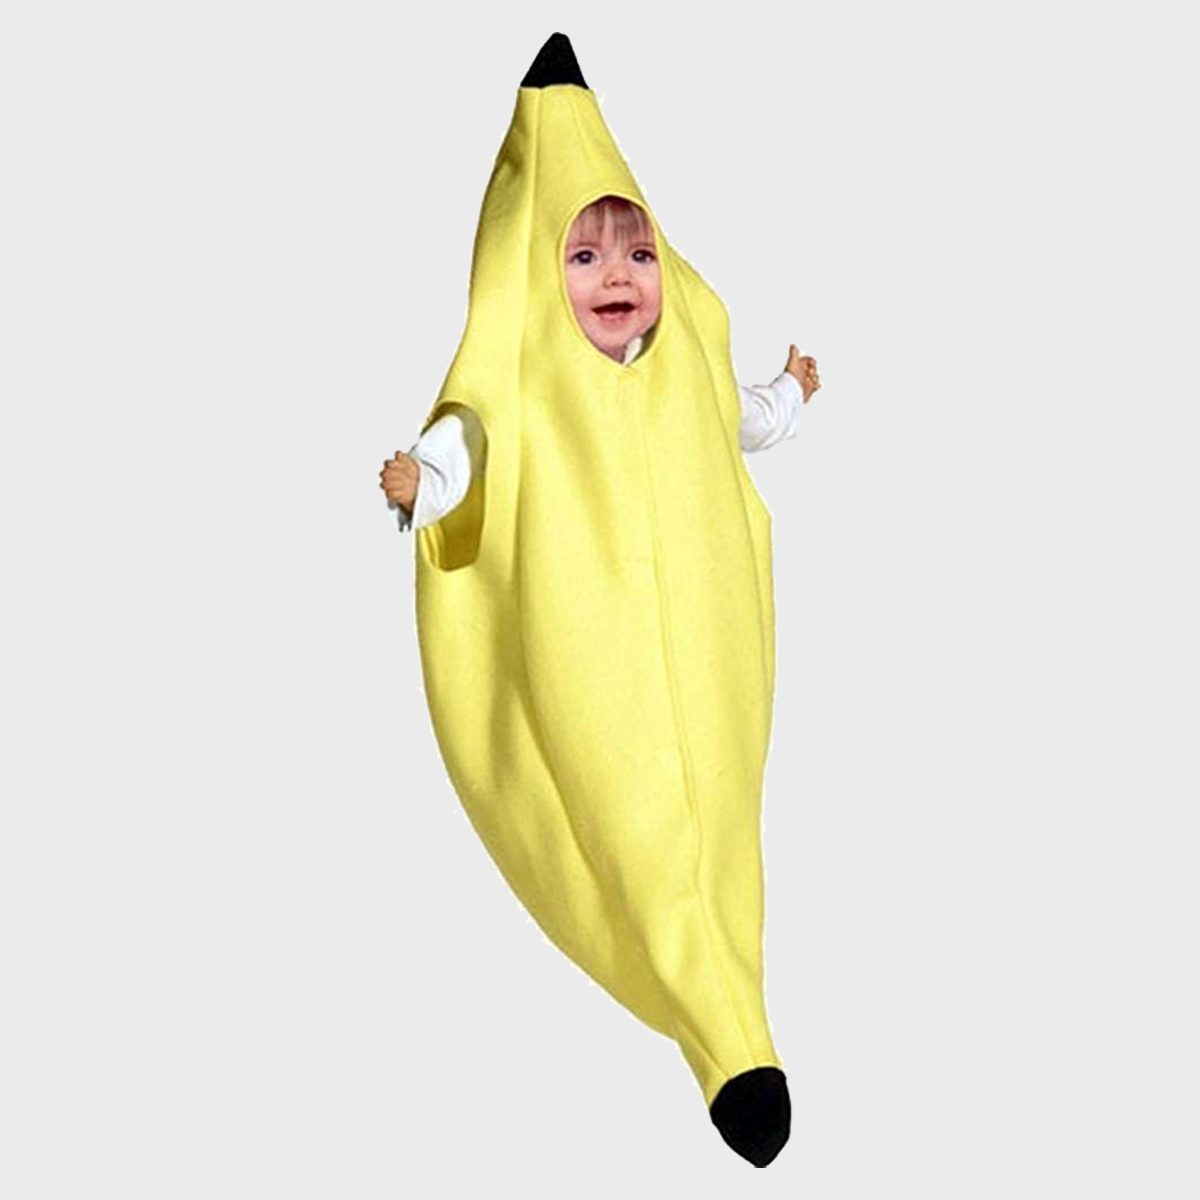 Banana Baby Costume